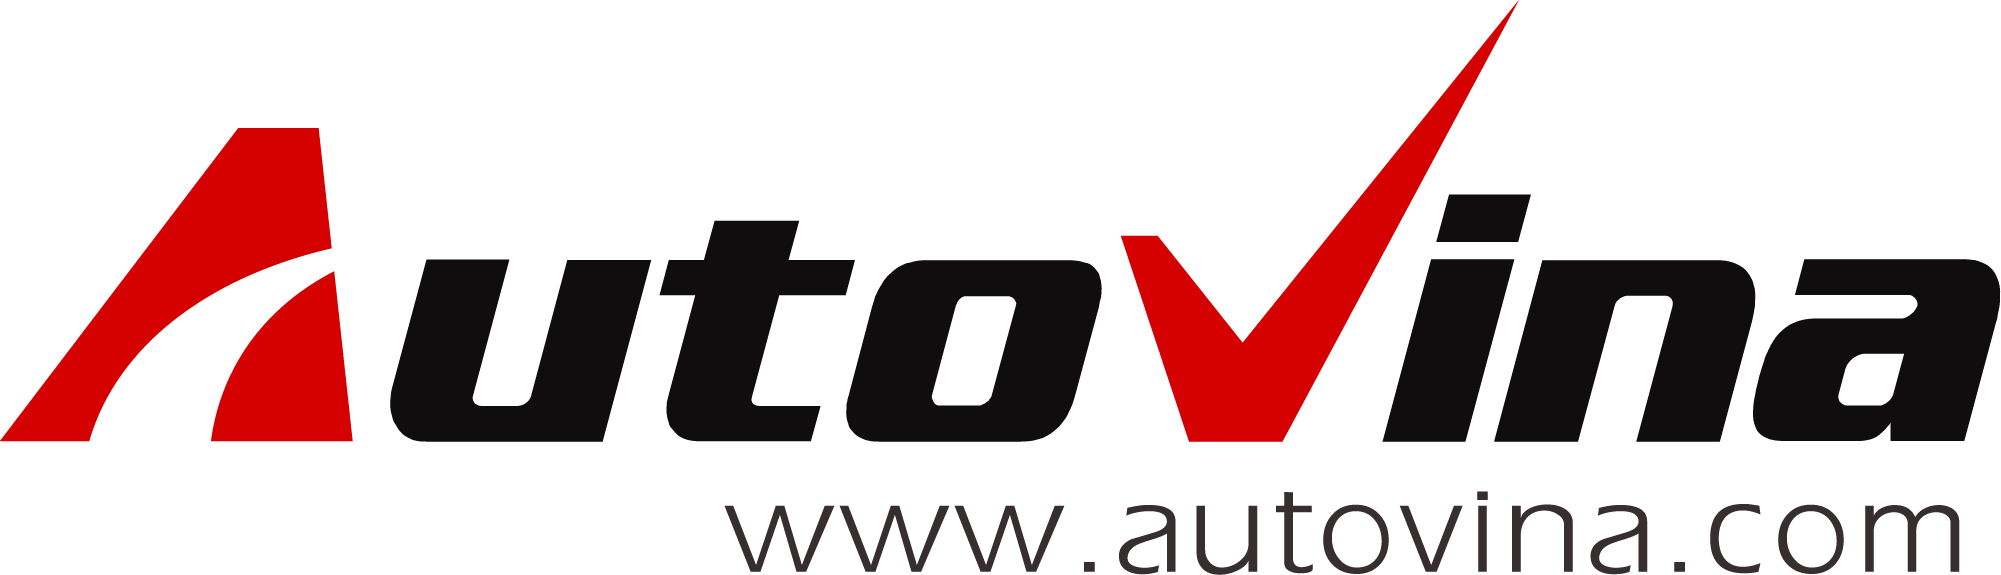 Autovina.com - kênh thông tin uy tín về ô tô, xe máy